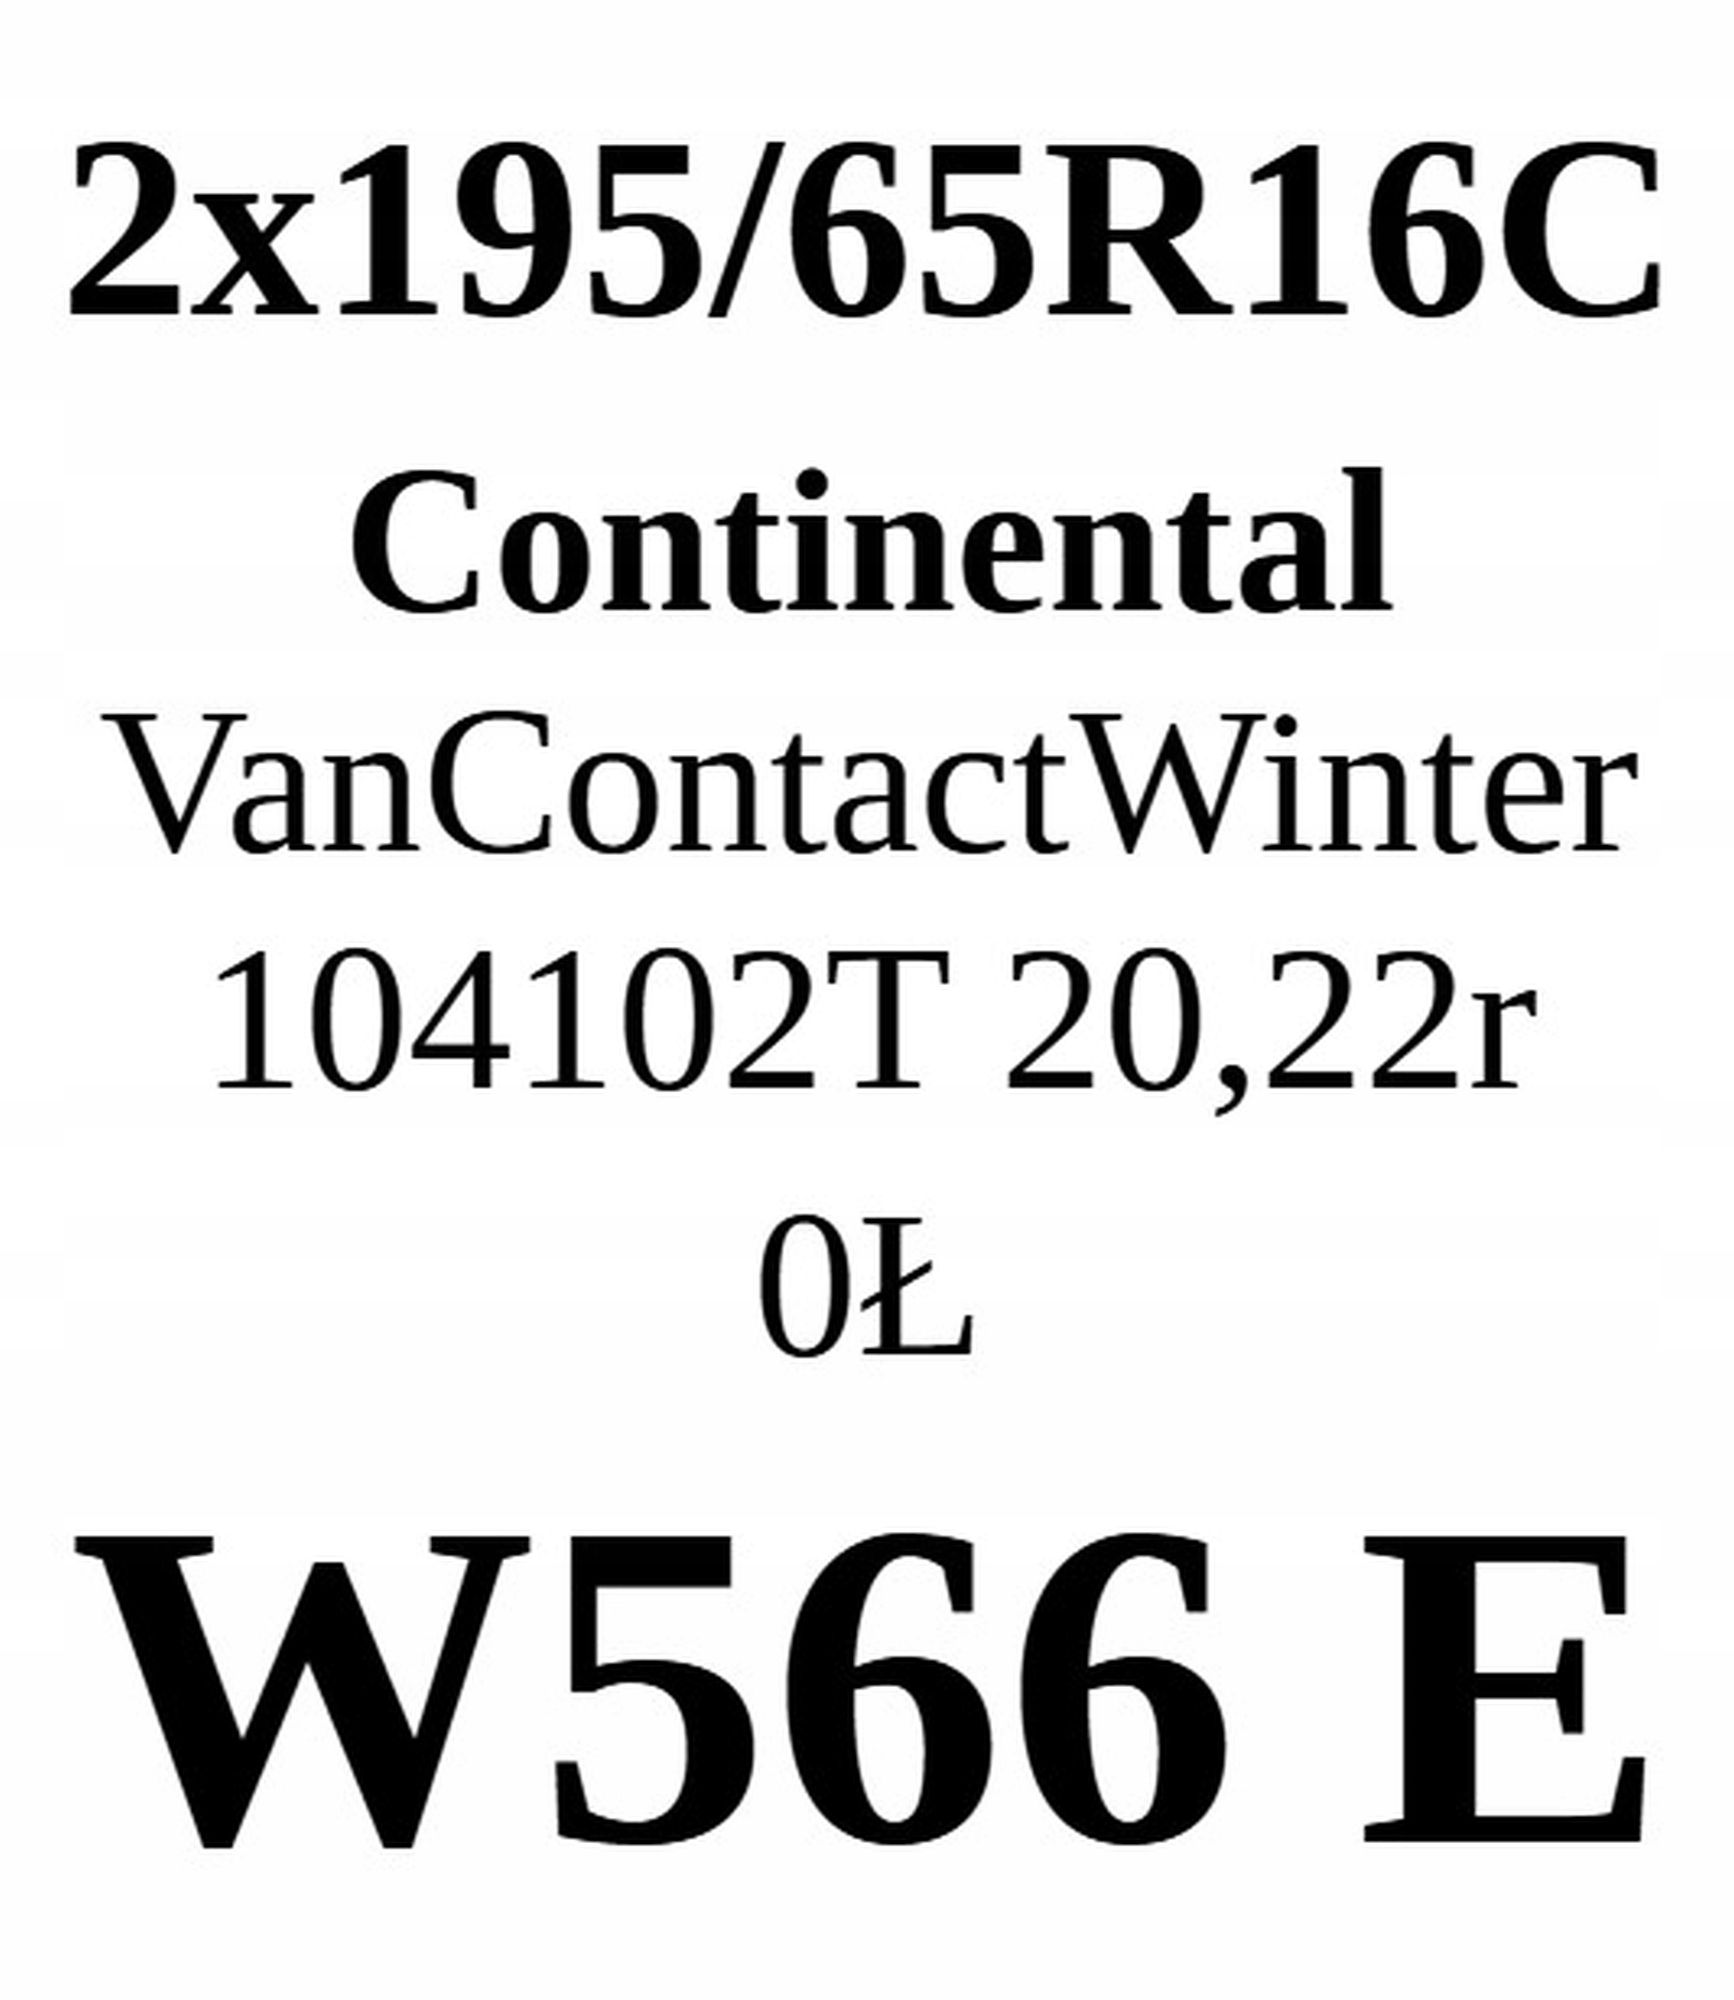 Opona 195/65/16c Continental 7,31mm 2szt.=400zł Z